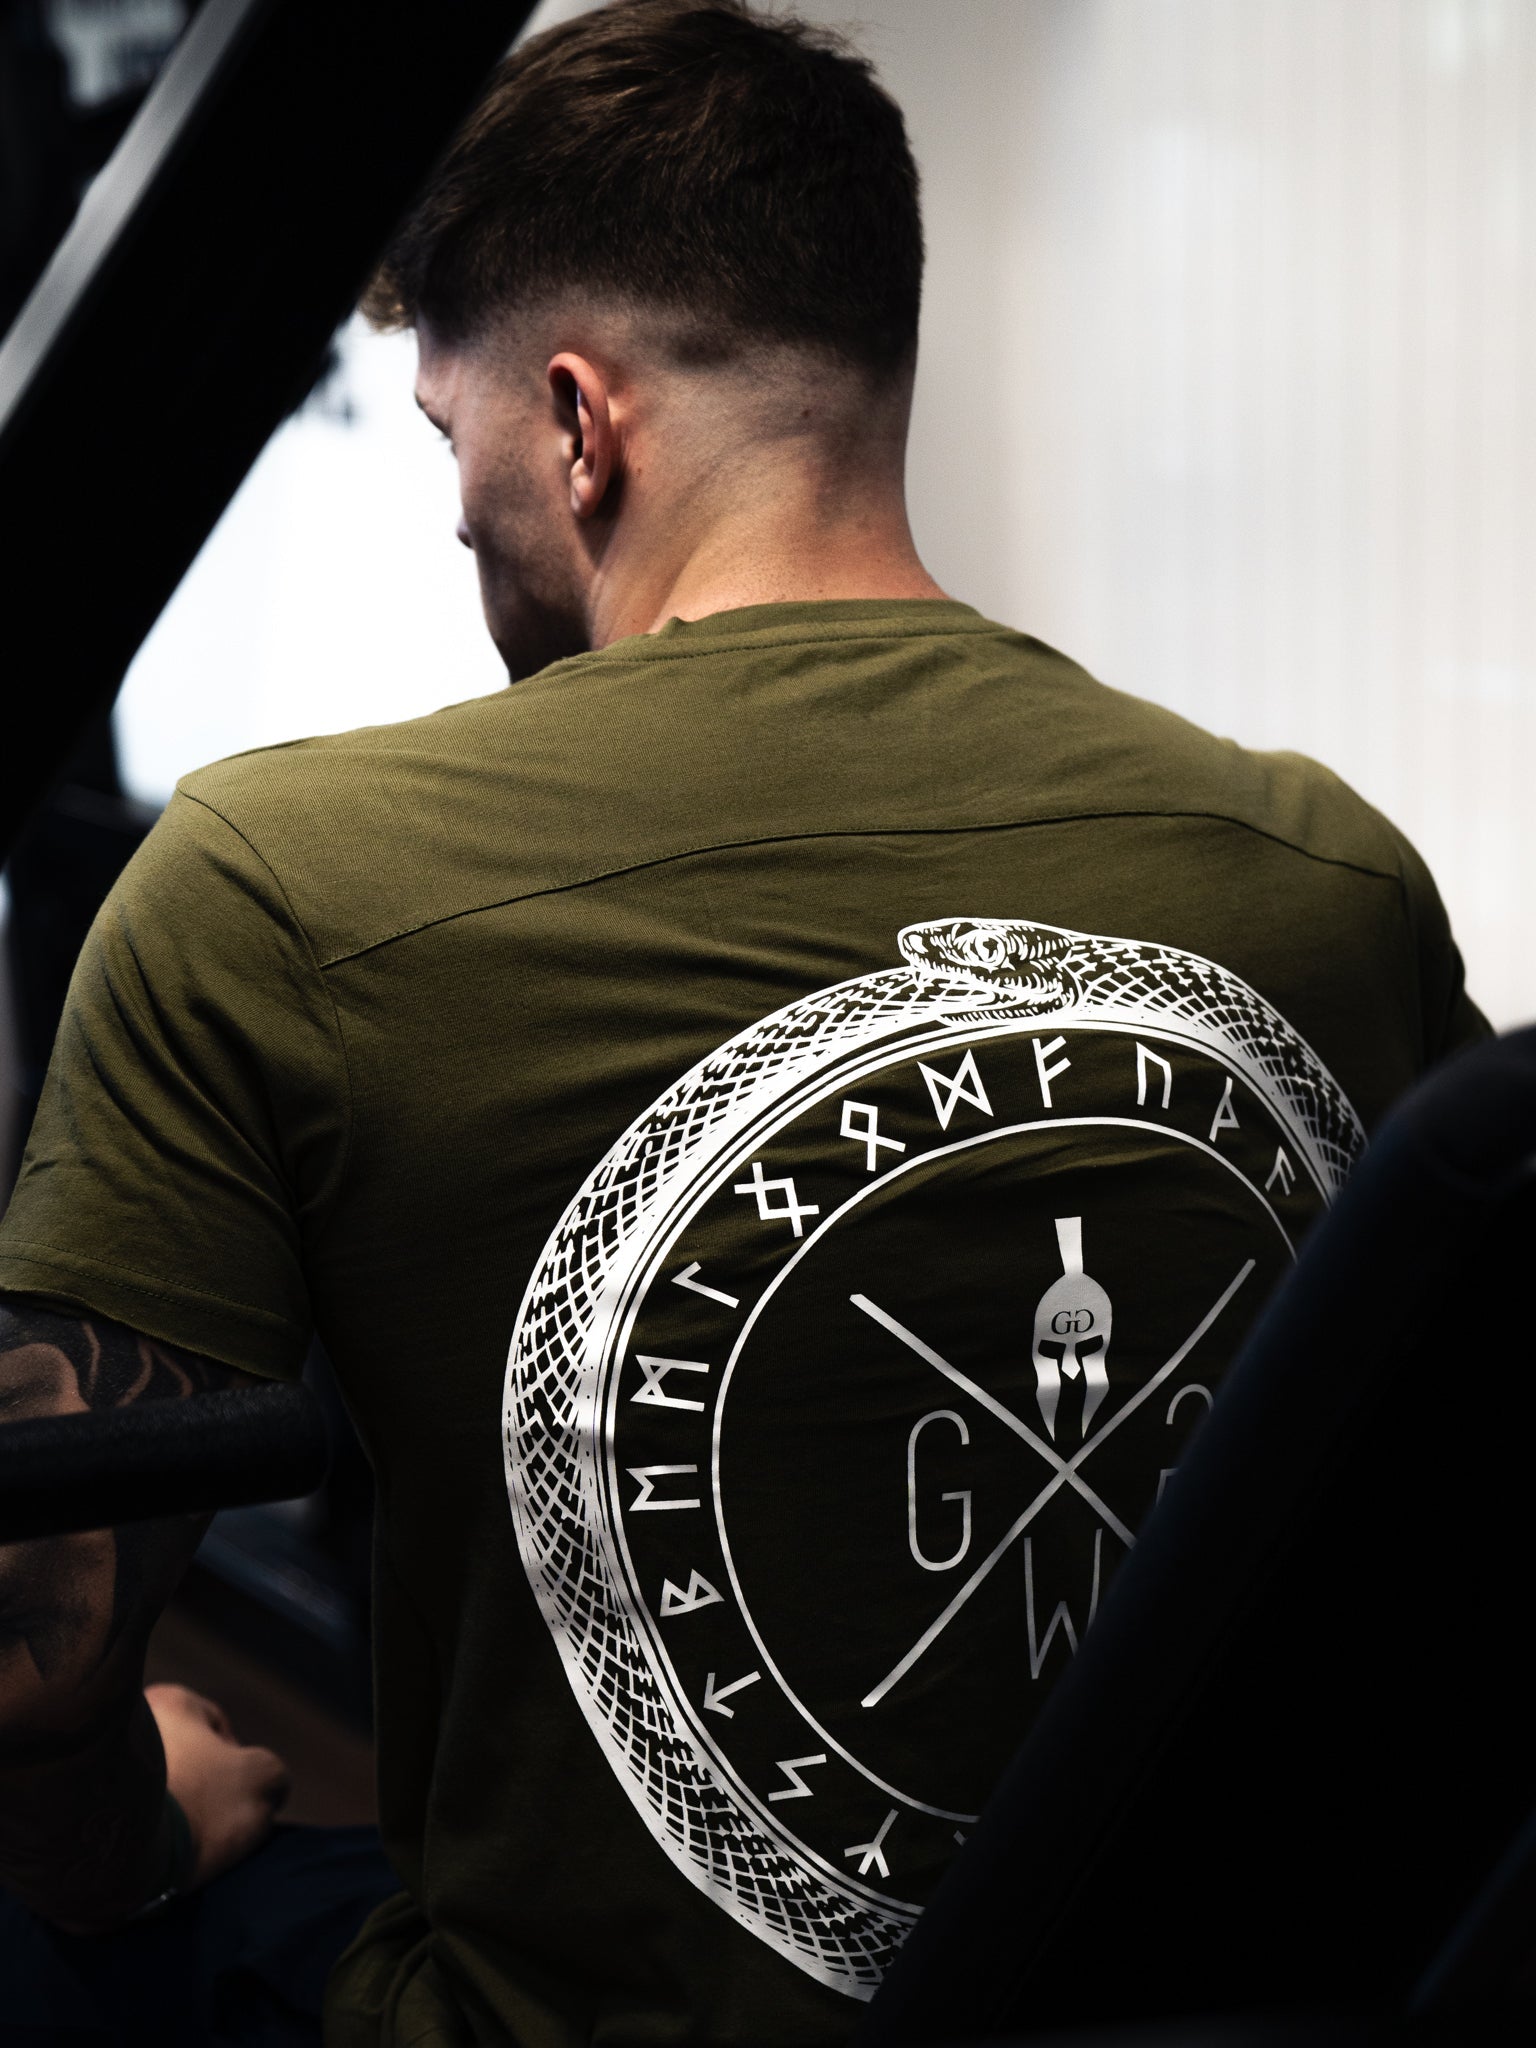 Olivgrünes Valhalla T-Shirt von Gym Generation mit ikonischem Spartaner-Logo für Herren.